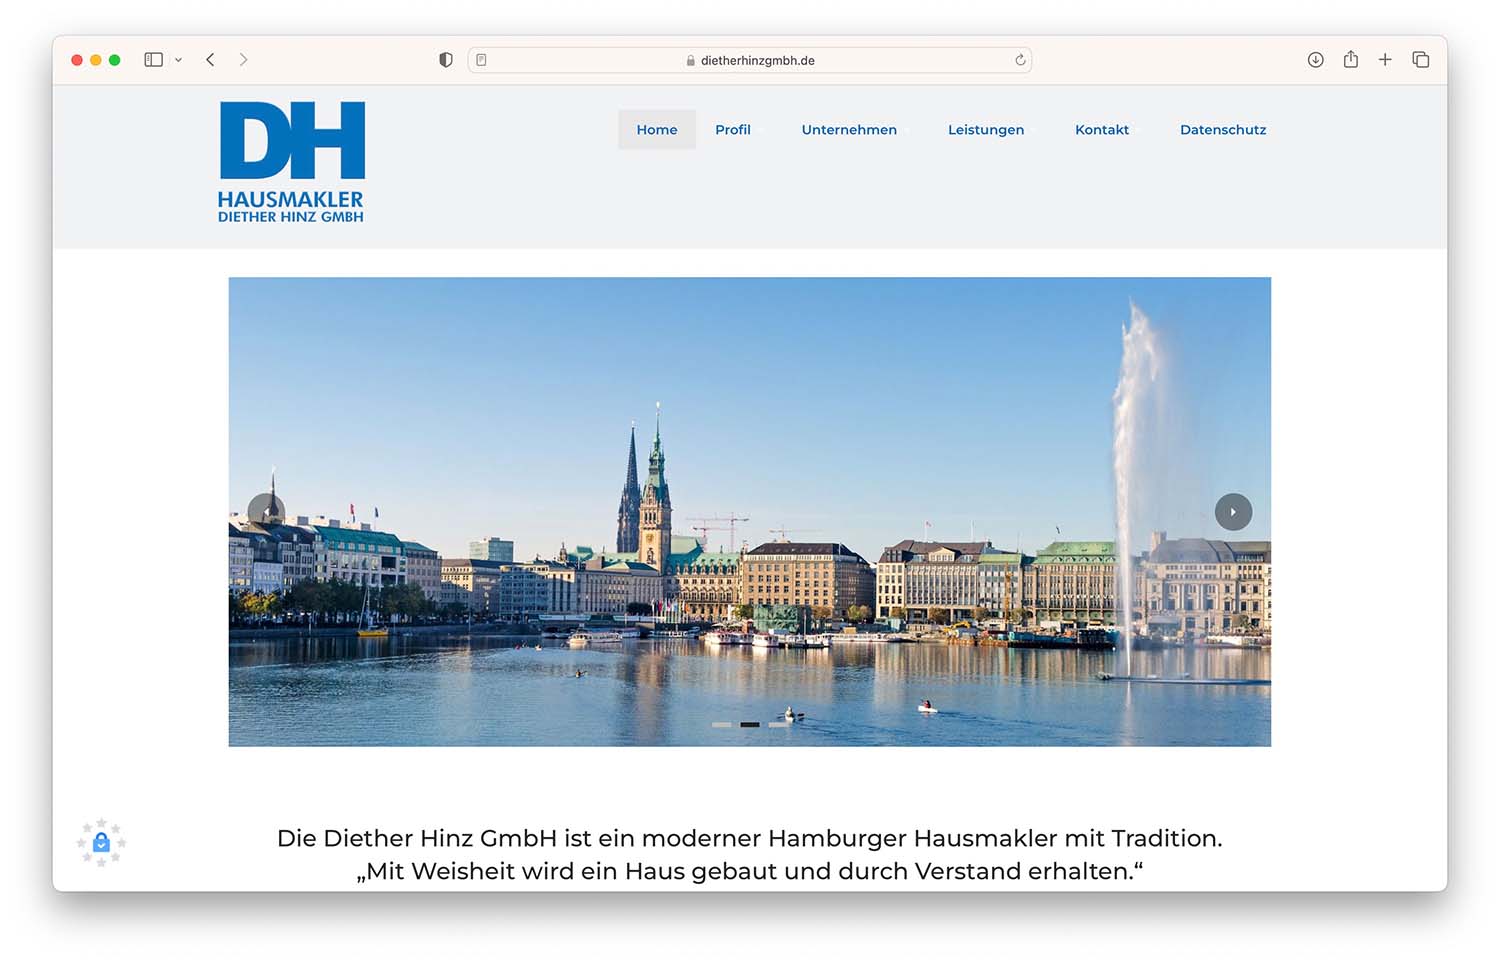 Diether Hinz GmbH